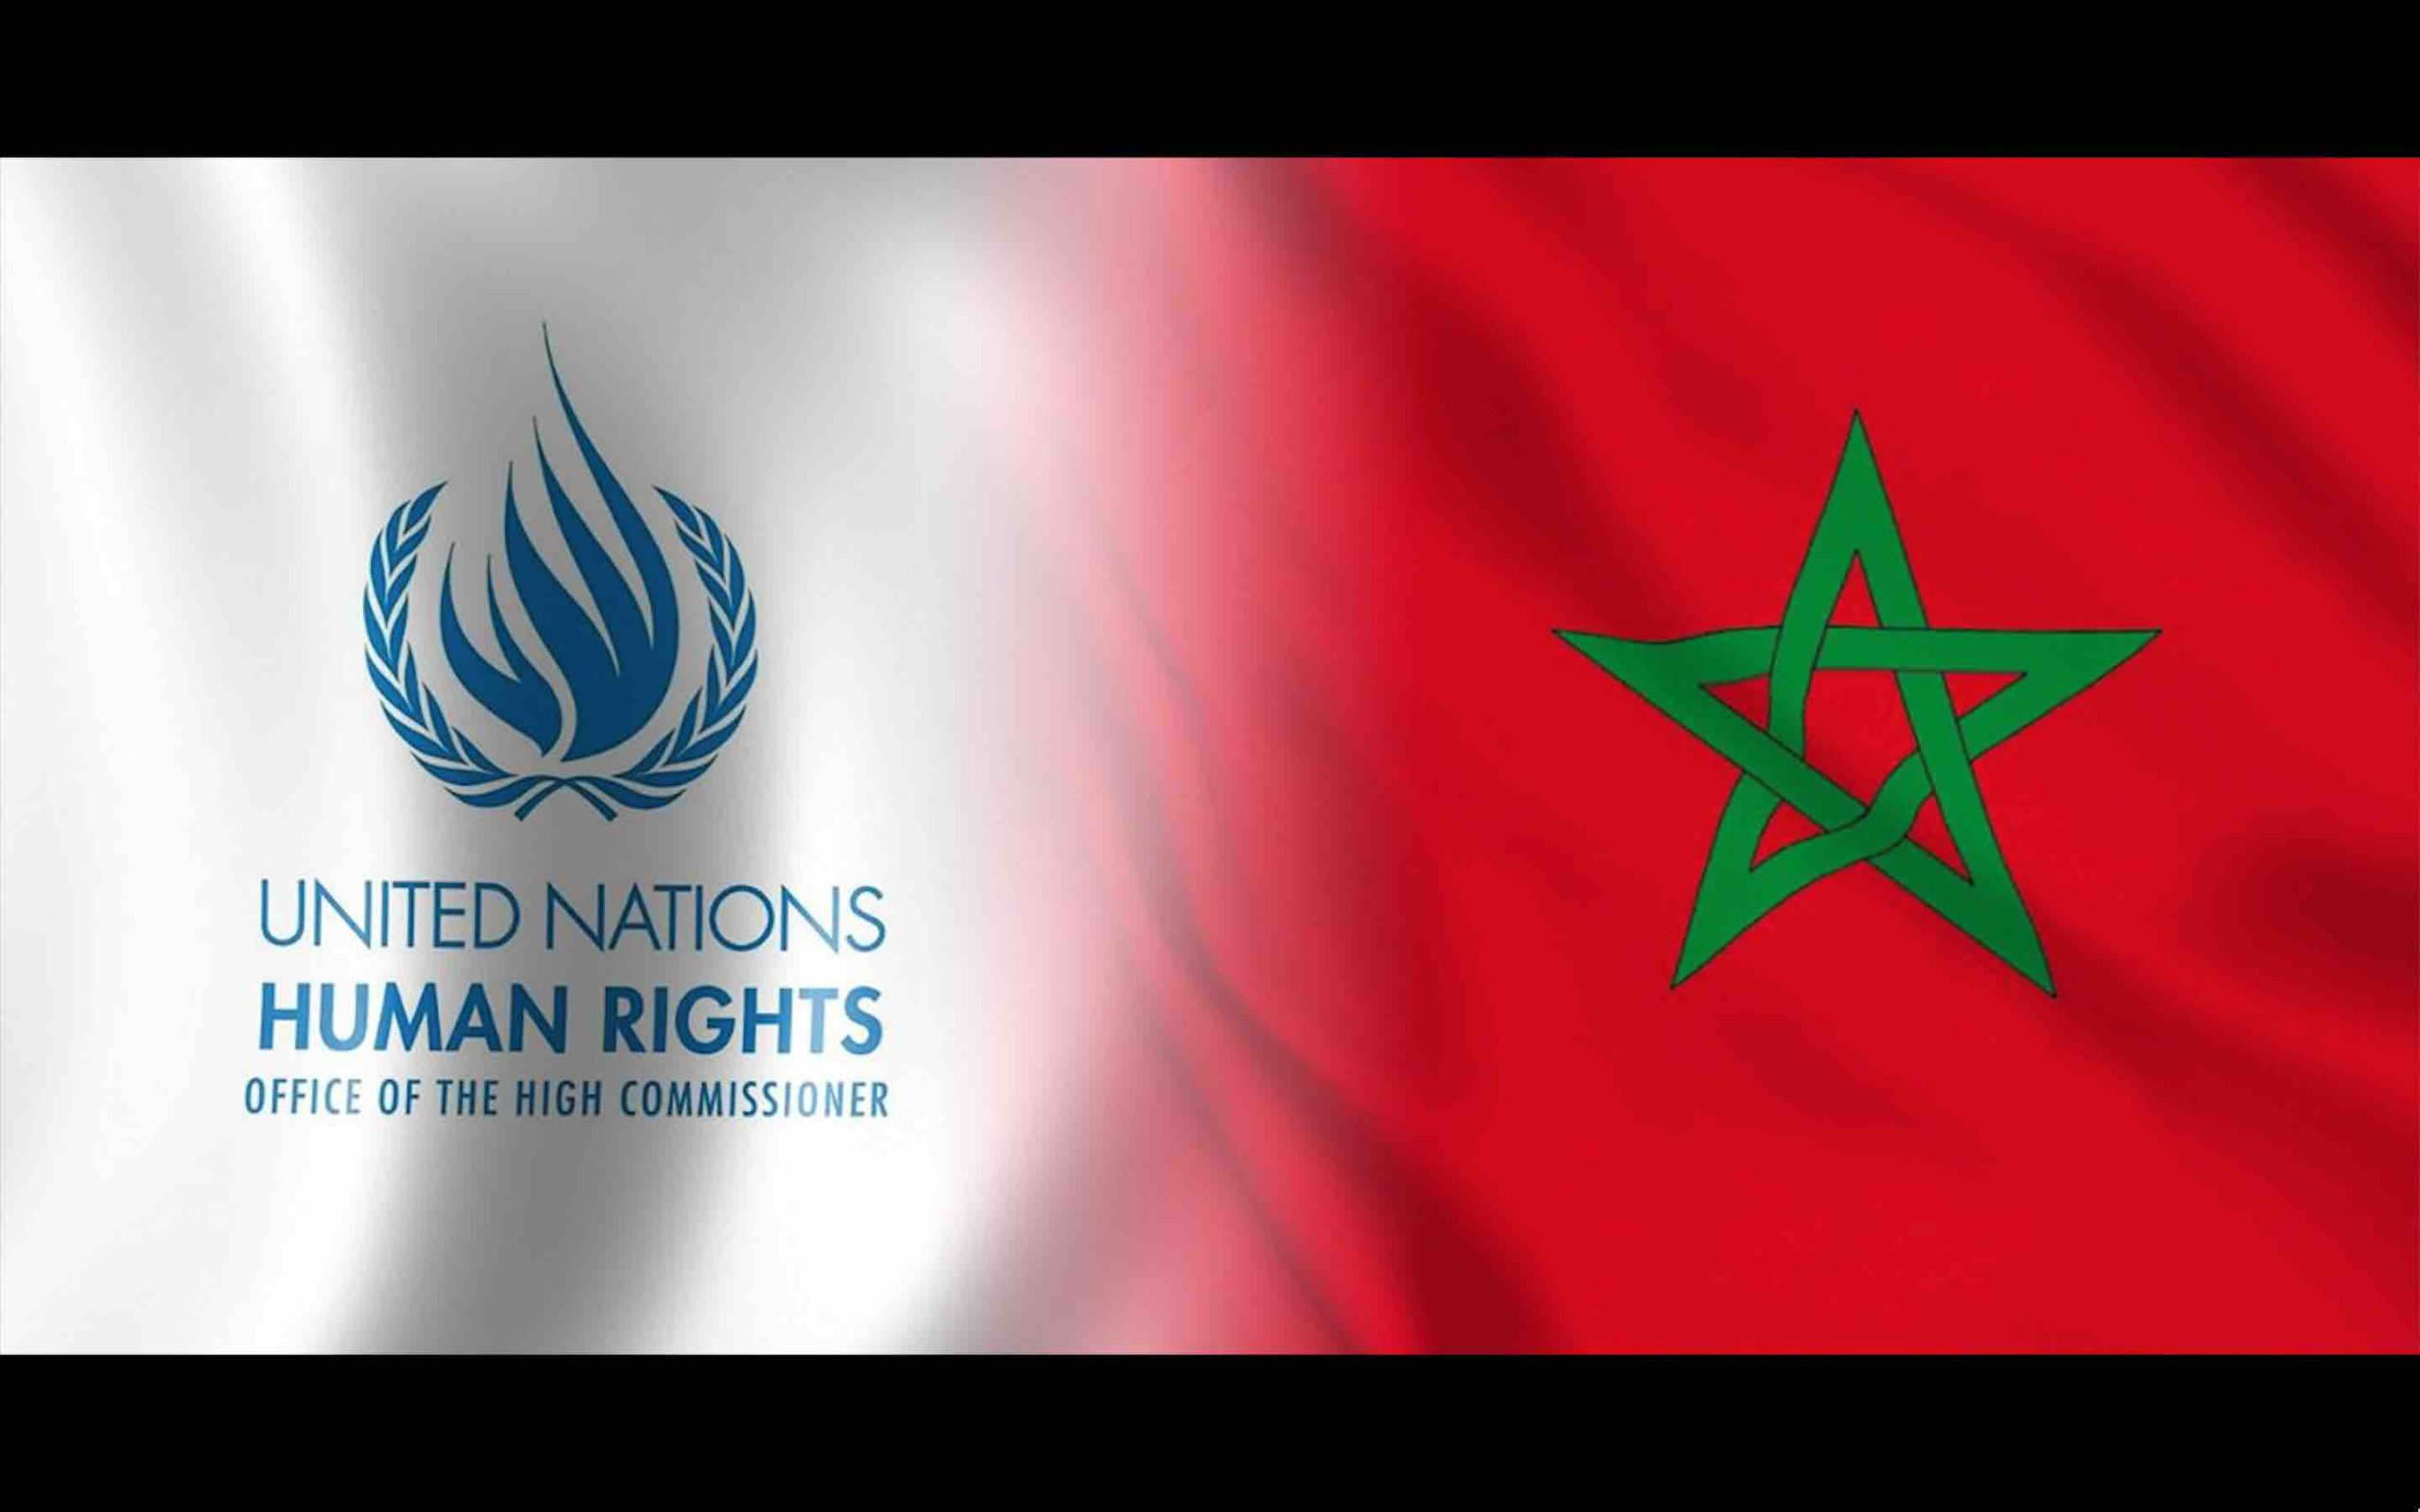 ONU Maroc CDH Conseil des Droits de l'Homme